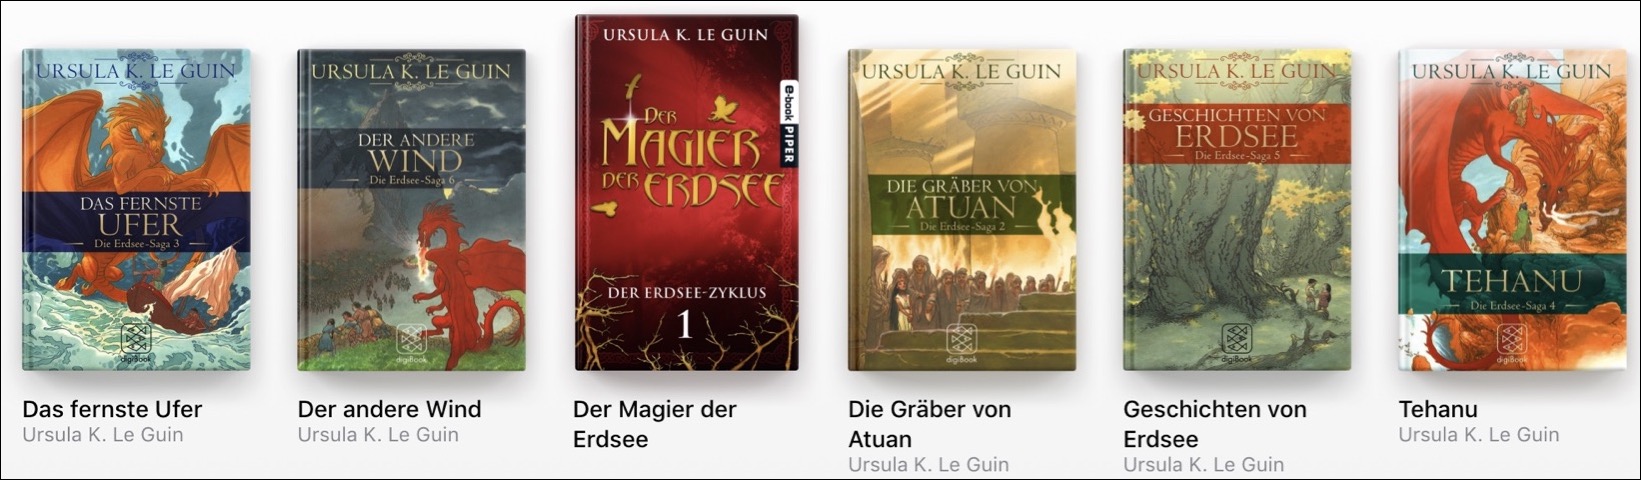 Alle sechs Bände der „Erdsee“-Hexalogie von Ursula K. Le Guin